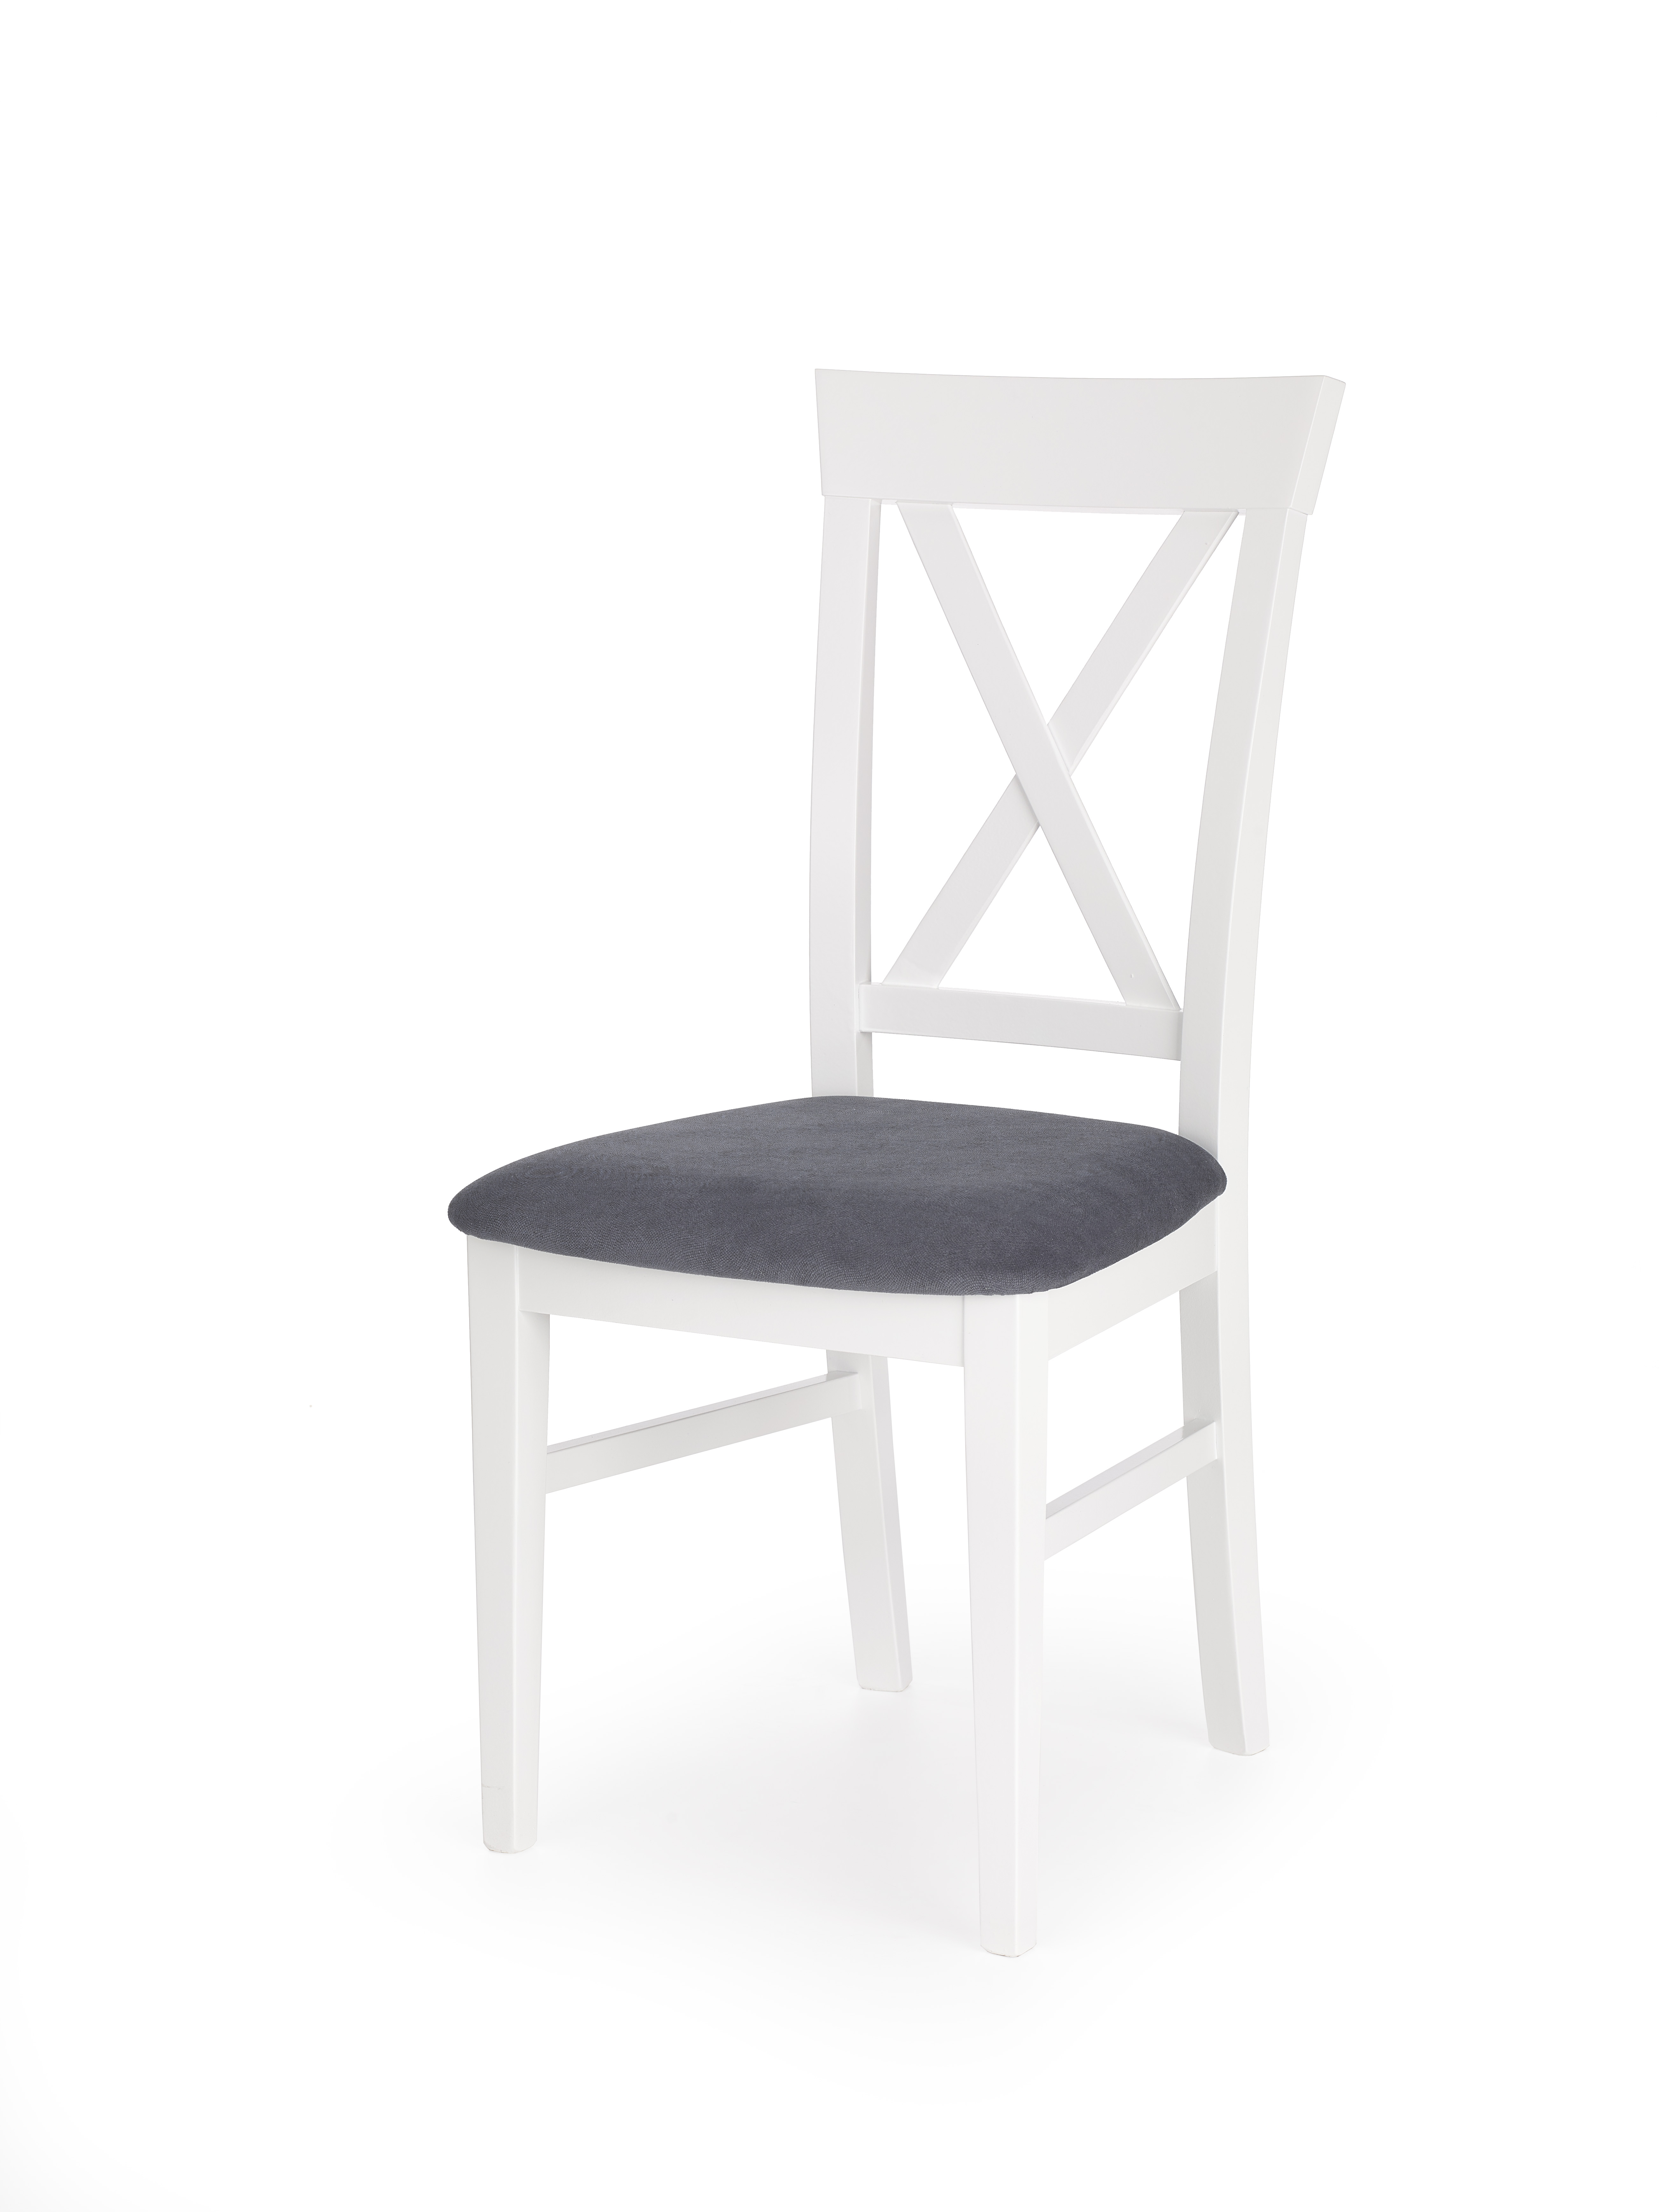 Bergamo szék - fehér / sötétkék Židle bergamo - bílý / granatowe